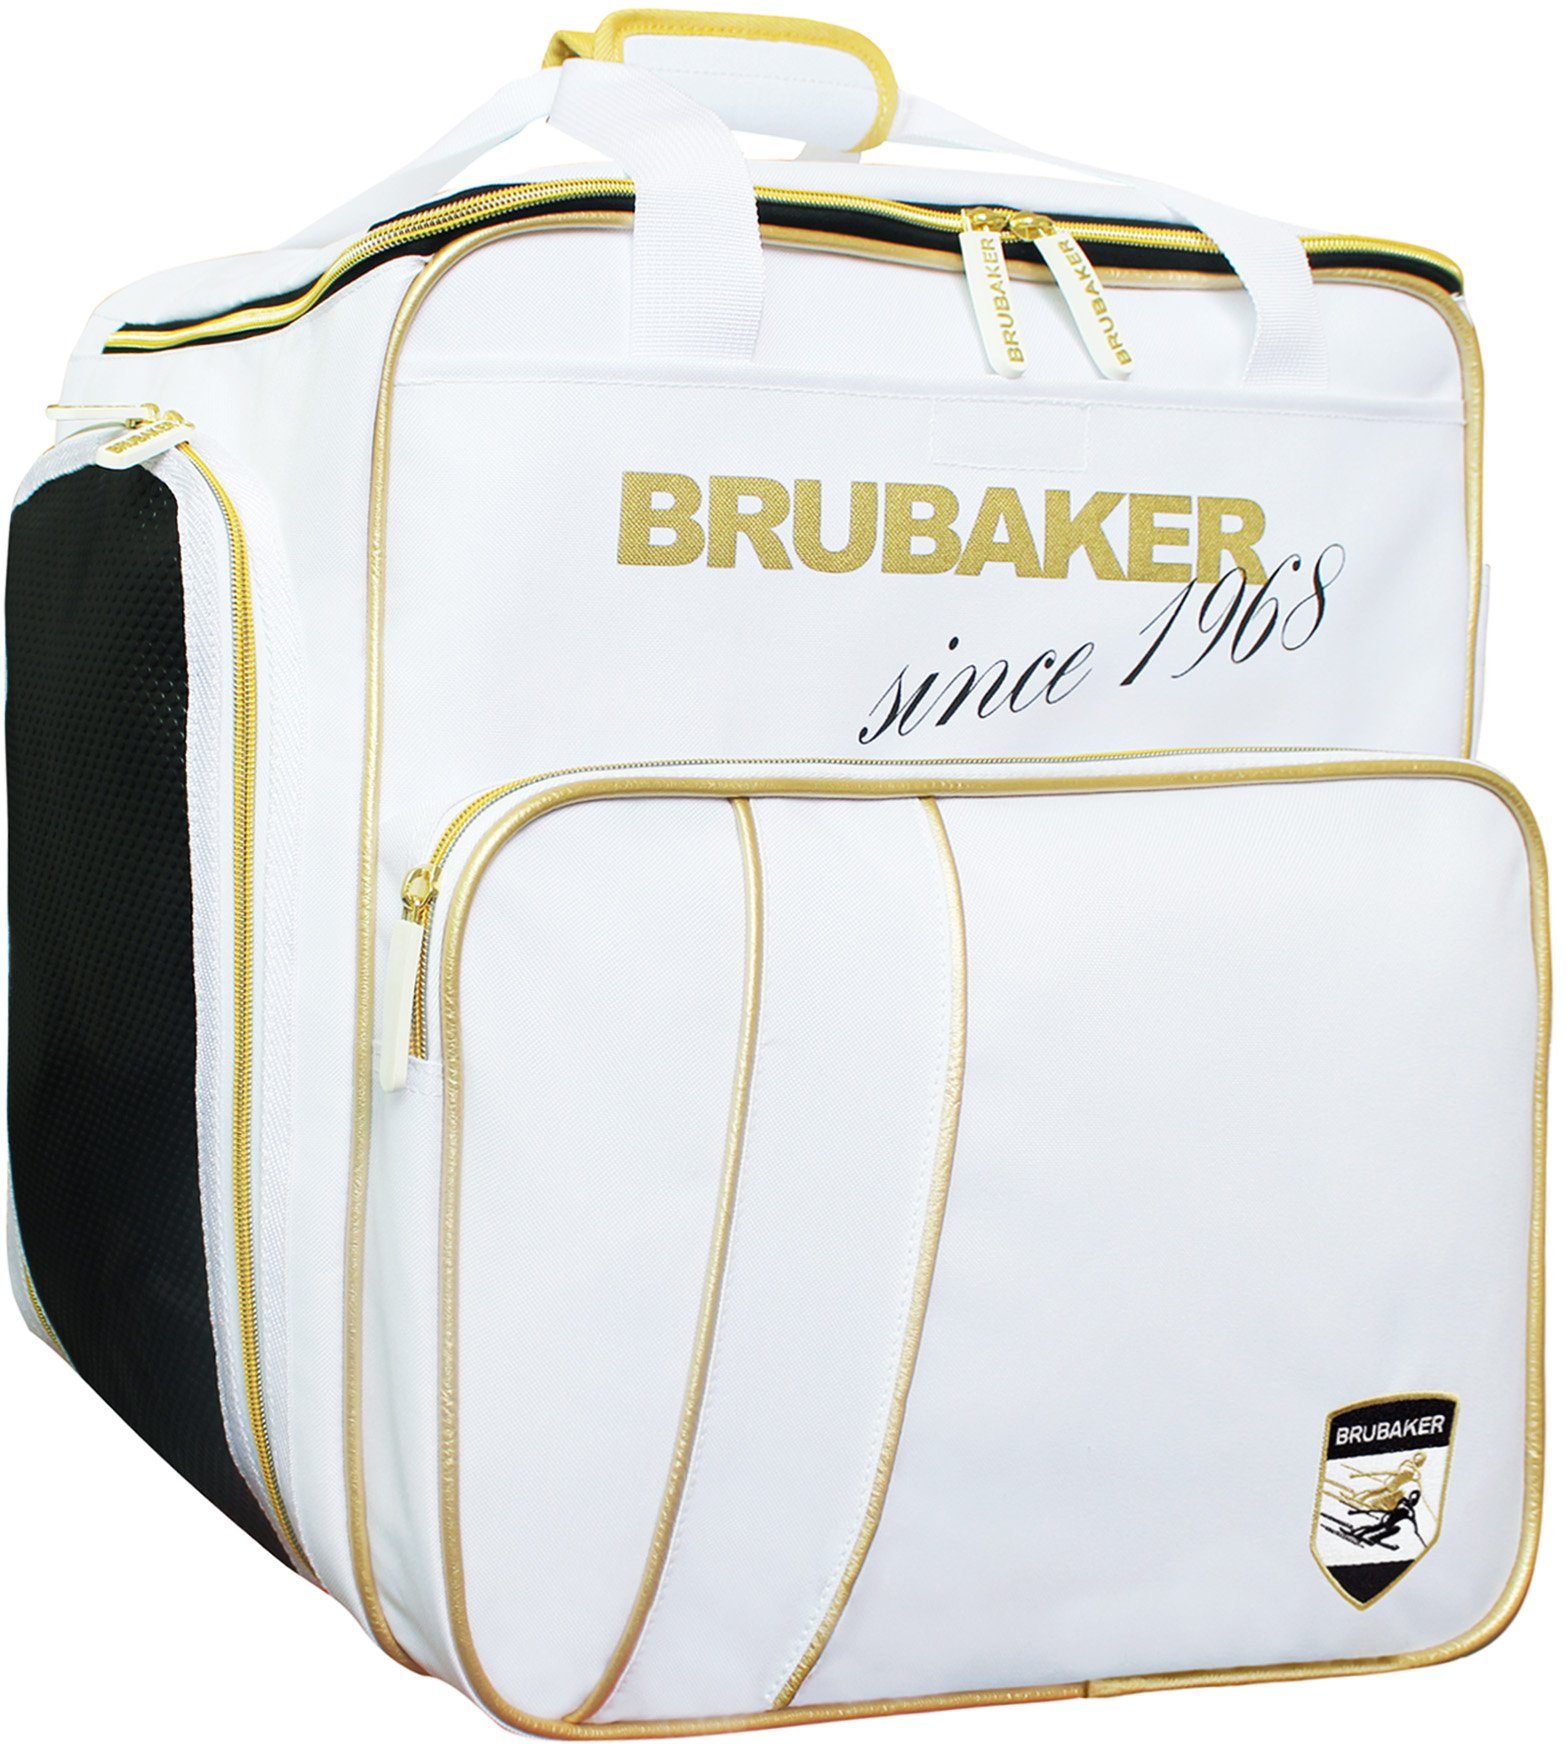 BRUBAKER Sporttasche Carver Grenoble Ski nässeabweisend), 1 Kombi Skisack Set und Skitasche reißfest (2-tlg., Paar für Skischuhtasche und